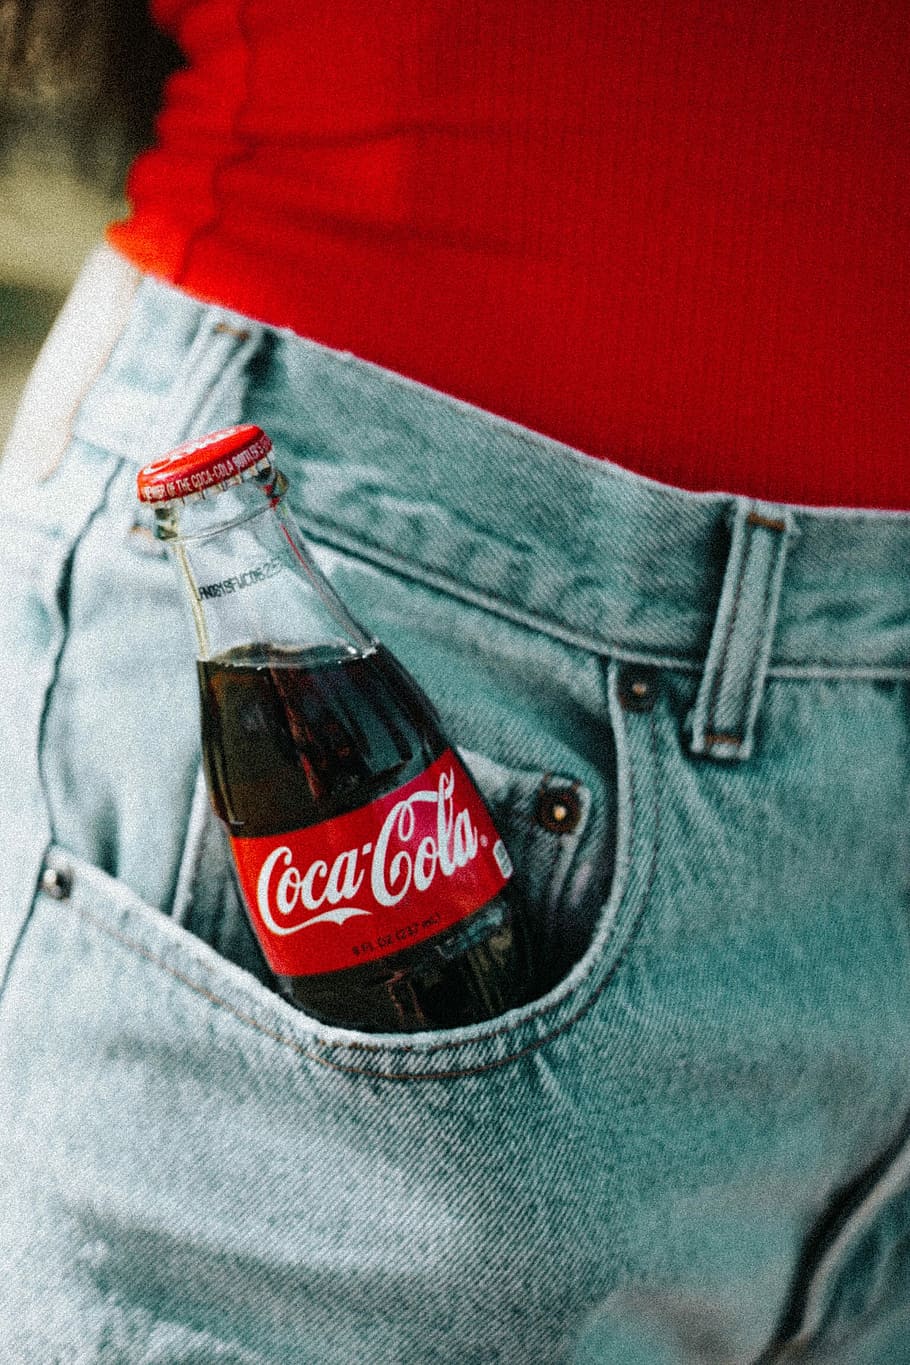 Coca-Cola glass bottle on pocket, Coca-Cola glass bottle inside jeans pocket